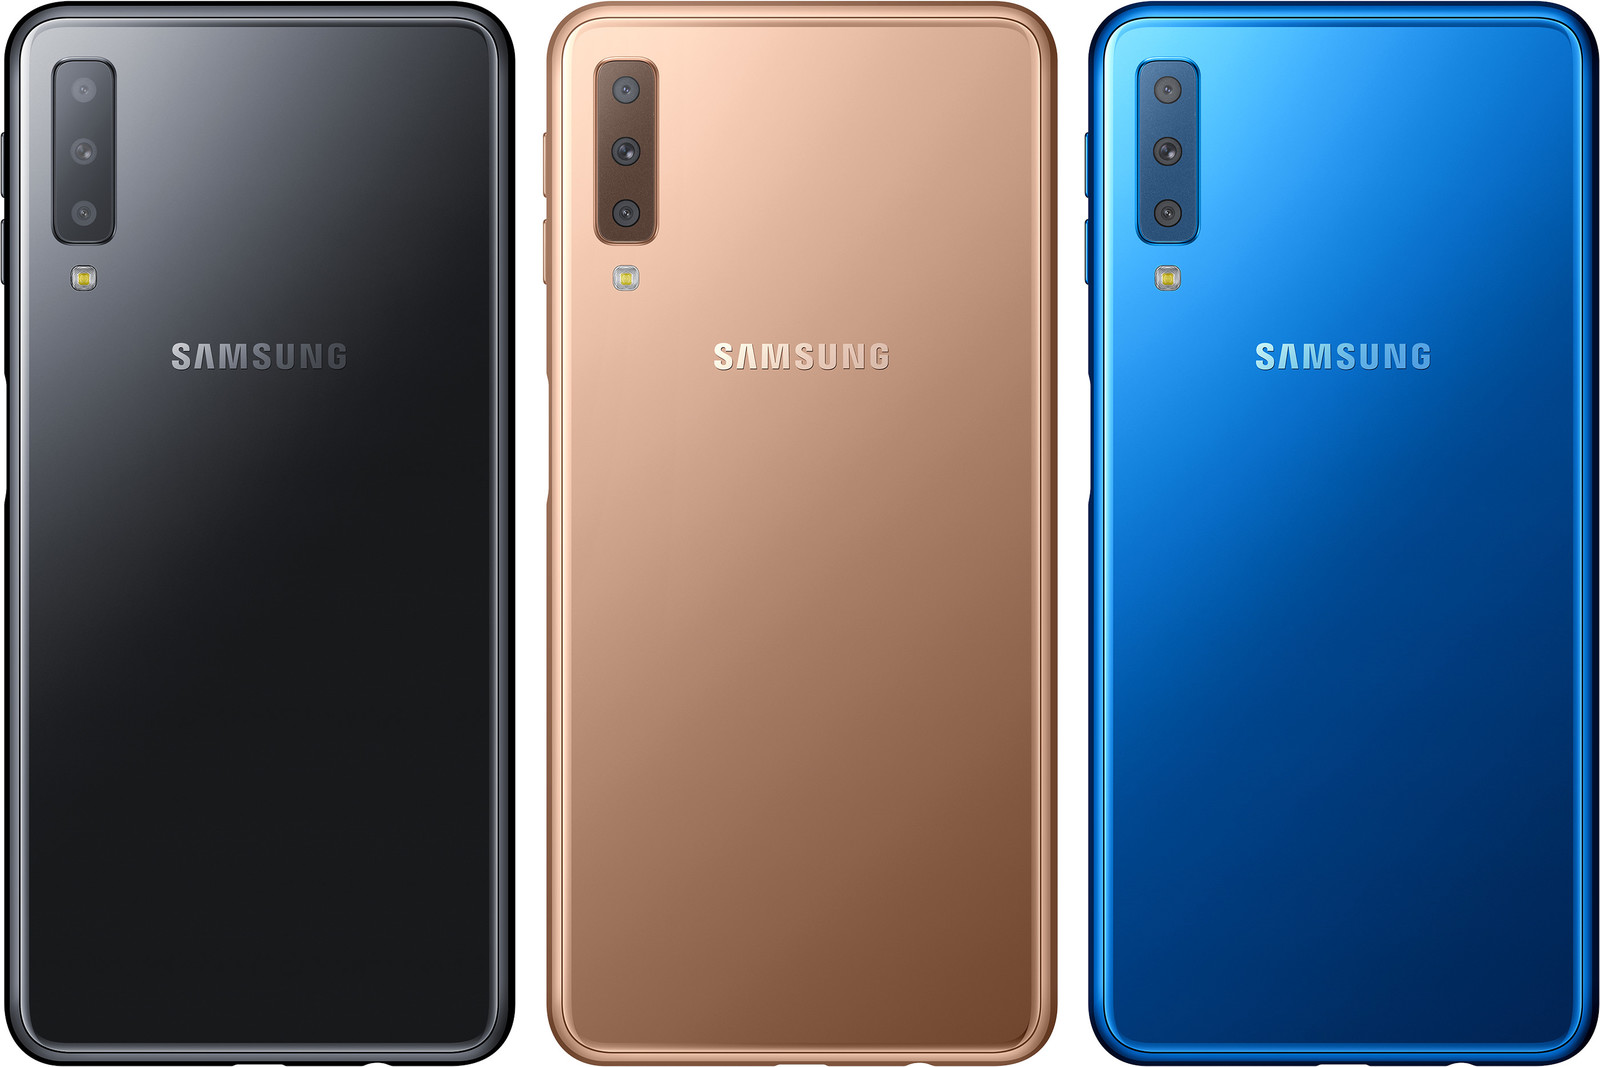 Смартфон Samsung Galaxy A72 128gb